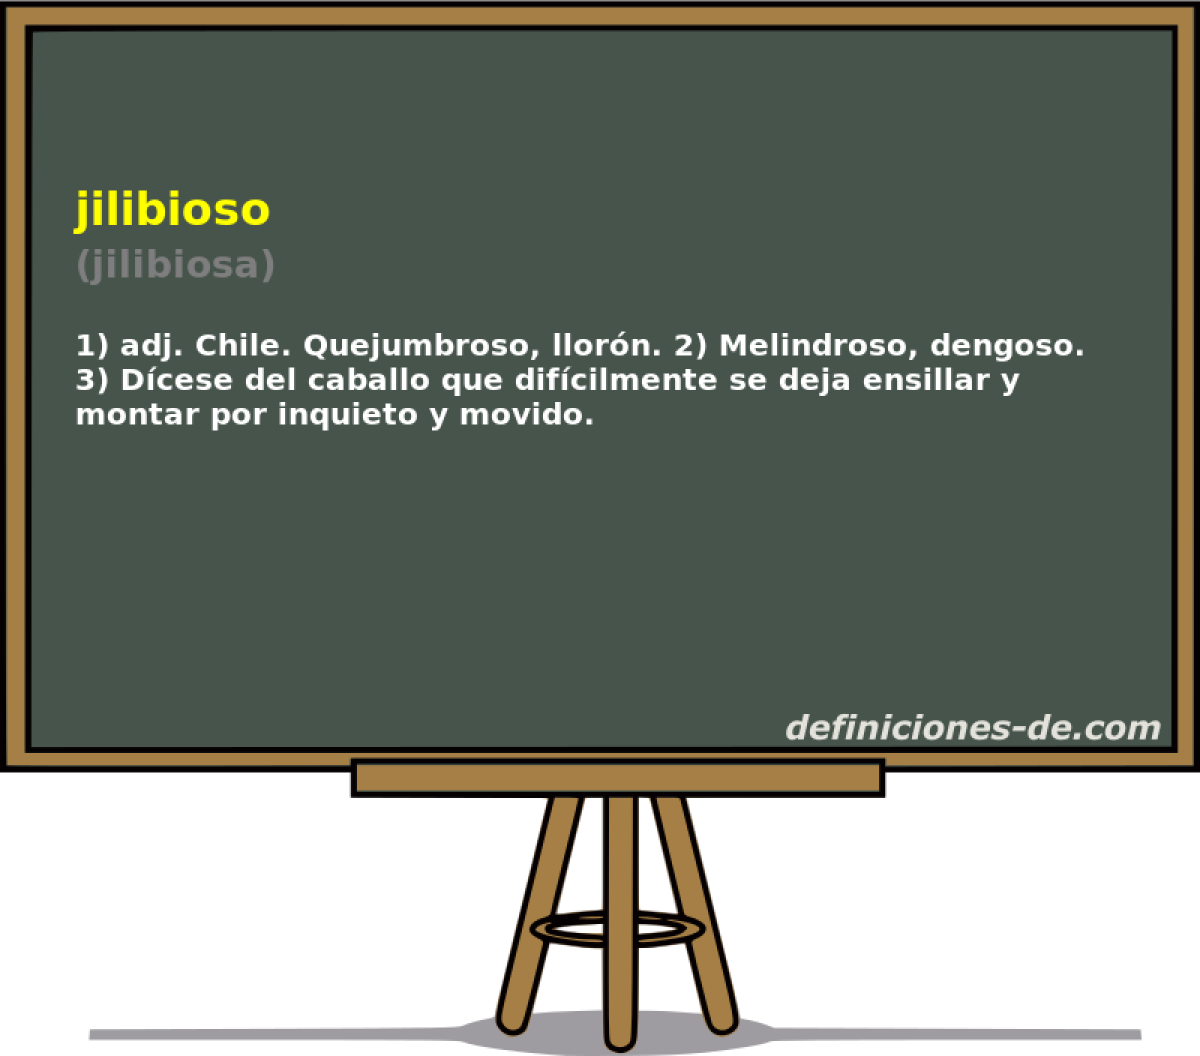 jilibioso (jilibiosa)